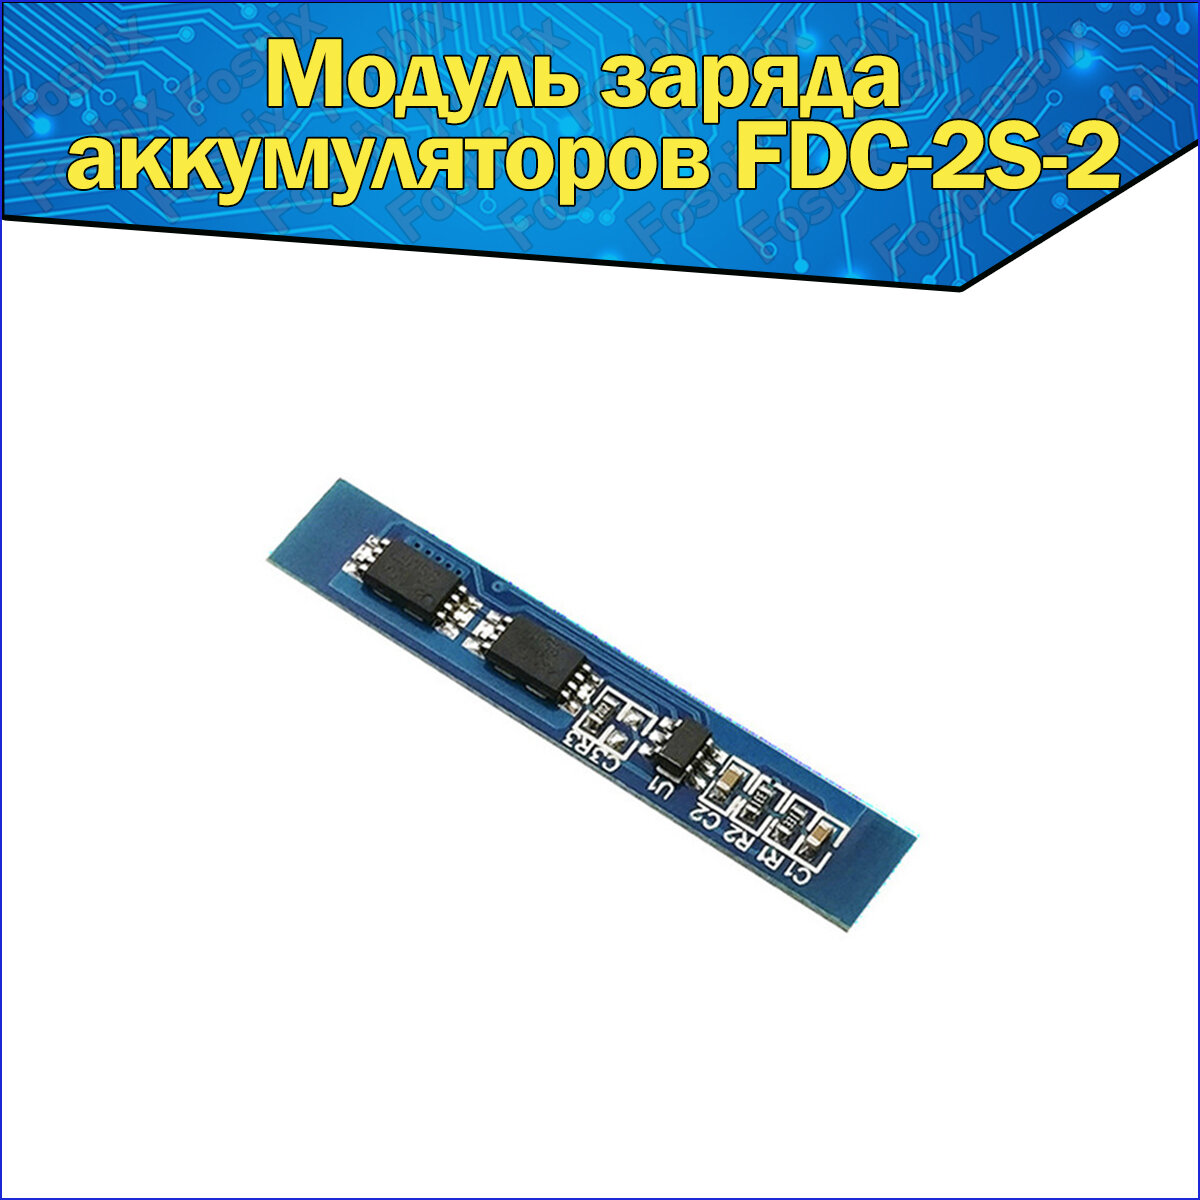 Литиевой модуль заряда аккумуляторов FDC-2S-2 для предотвращения перезарядки и чрезмерной разрядки